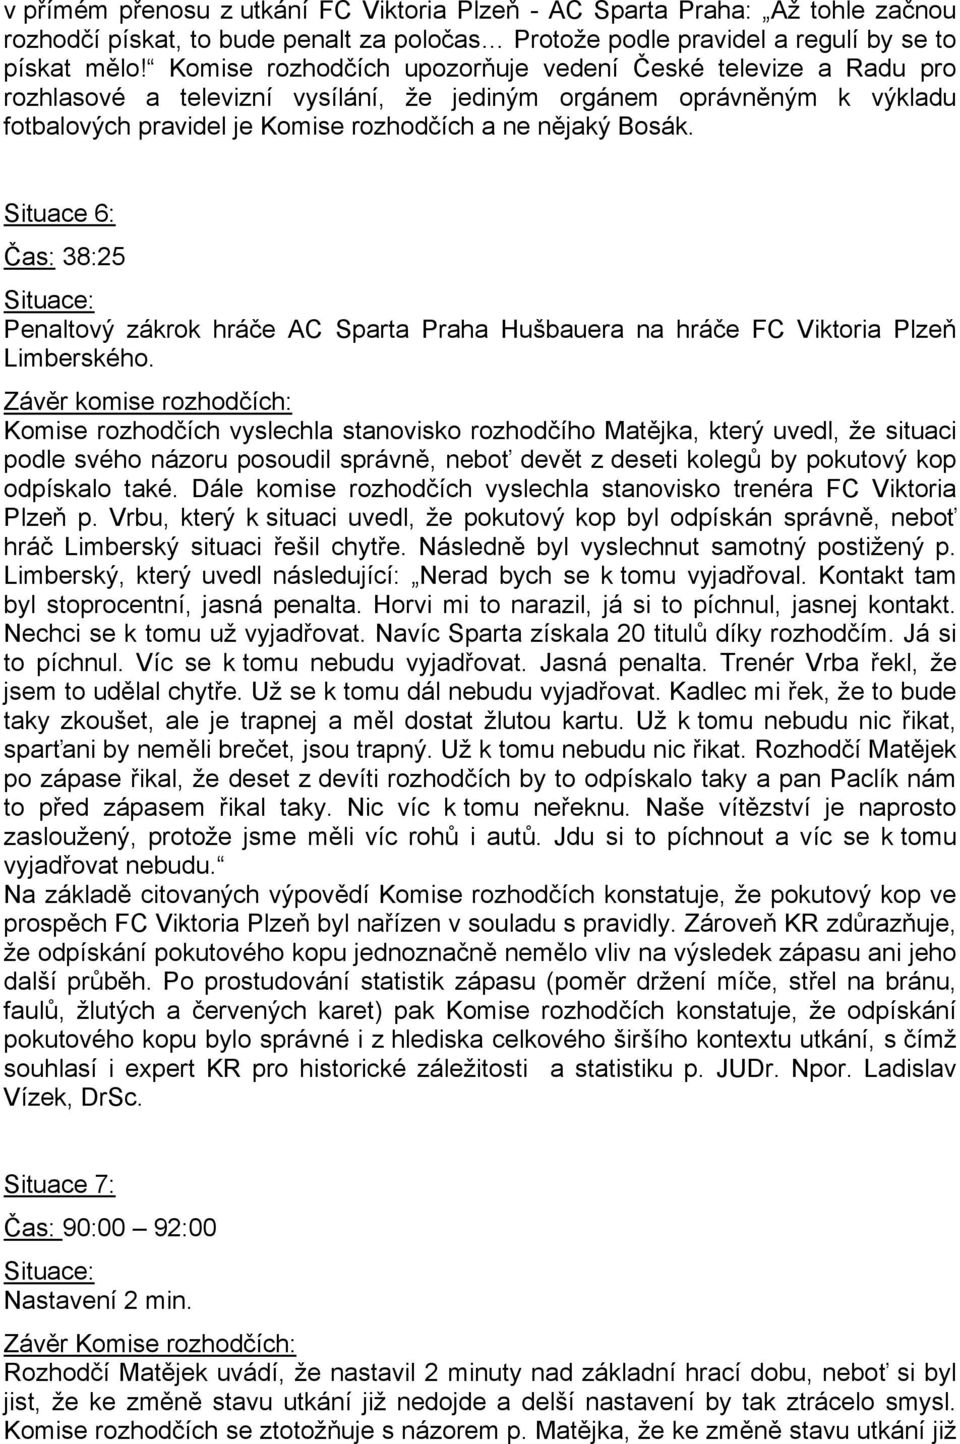 Situace 6: Čas: 38:25 Penaltový zákrok hráče AC Sparta Praha Hušbauera na hráče FC Viktoria Plzeň Limberského.